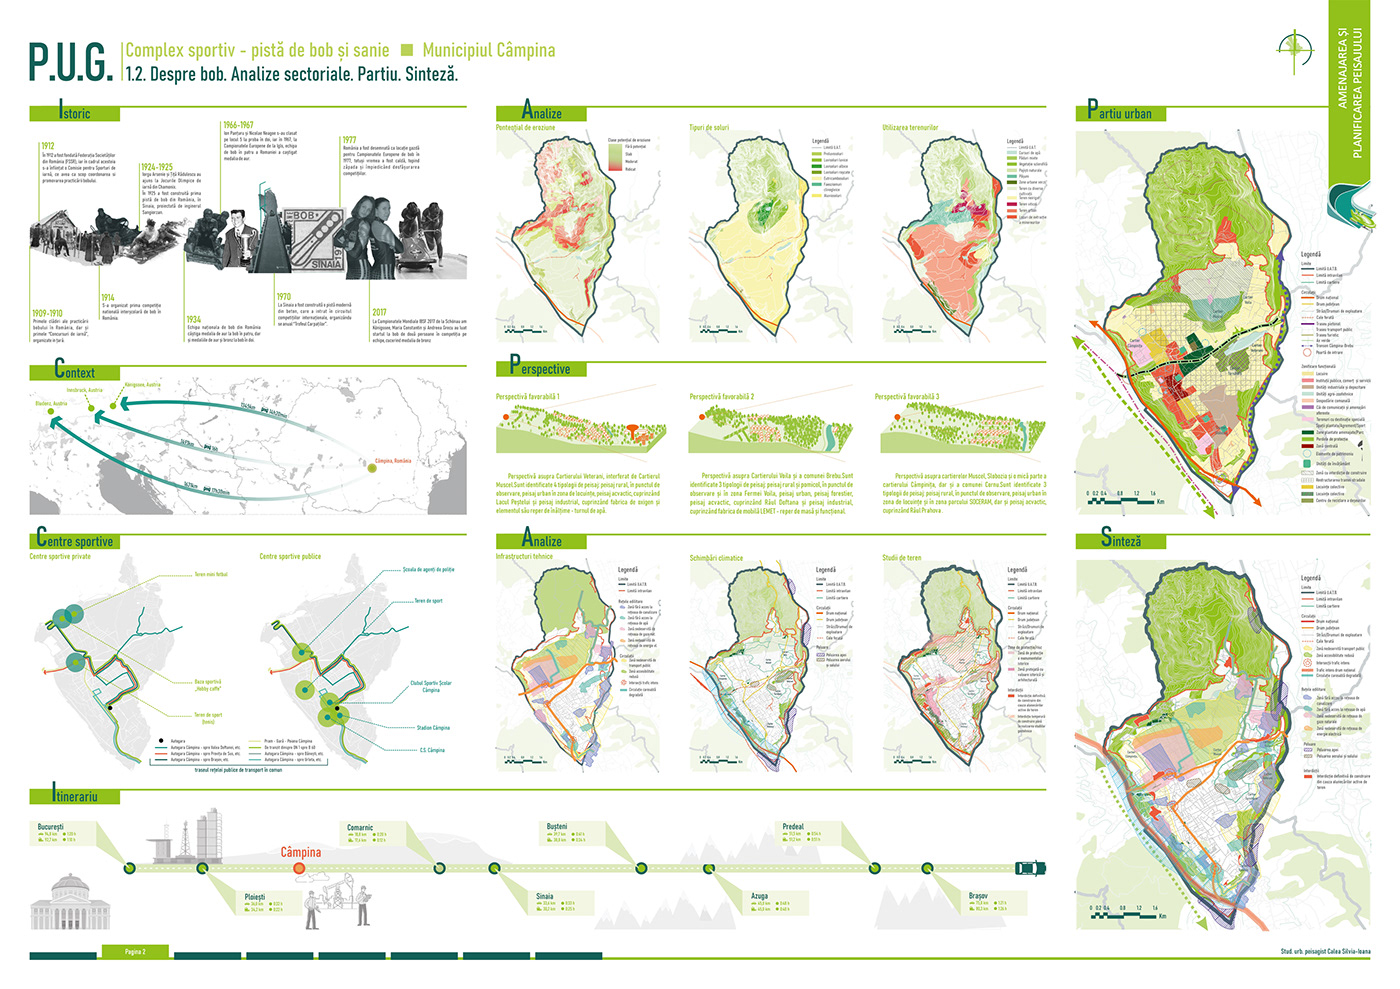 Bobsled Landscape urban planning design Graphic Designer